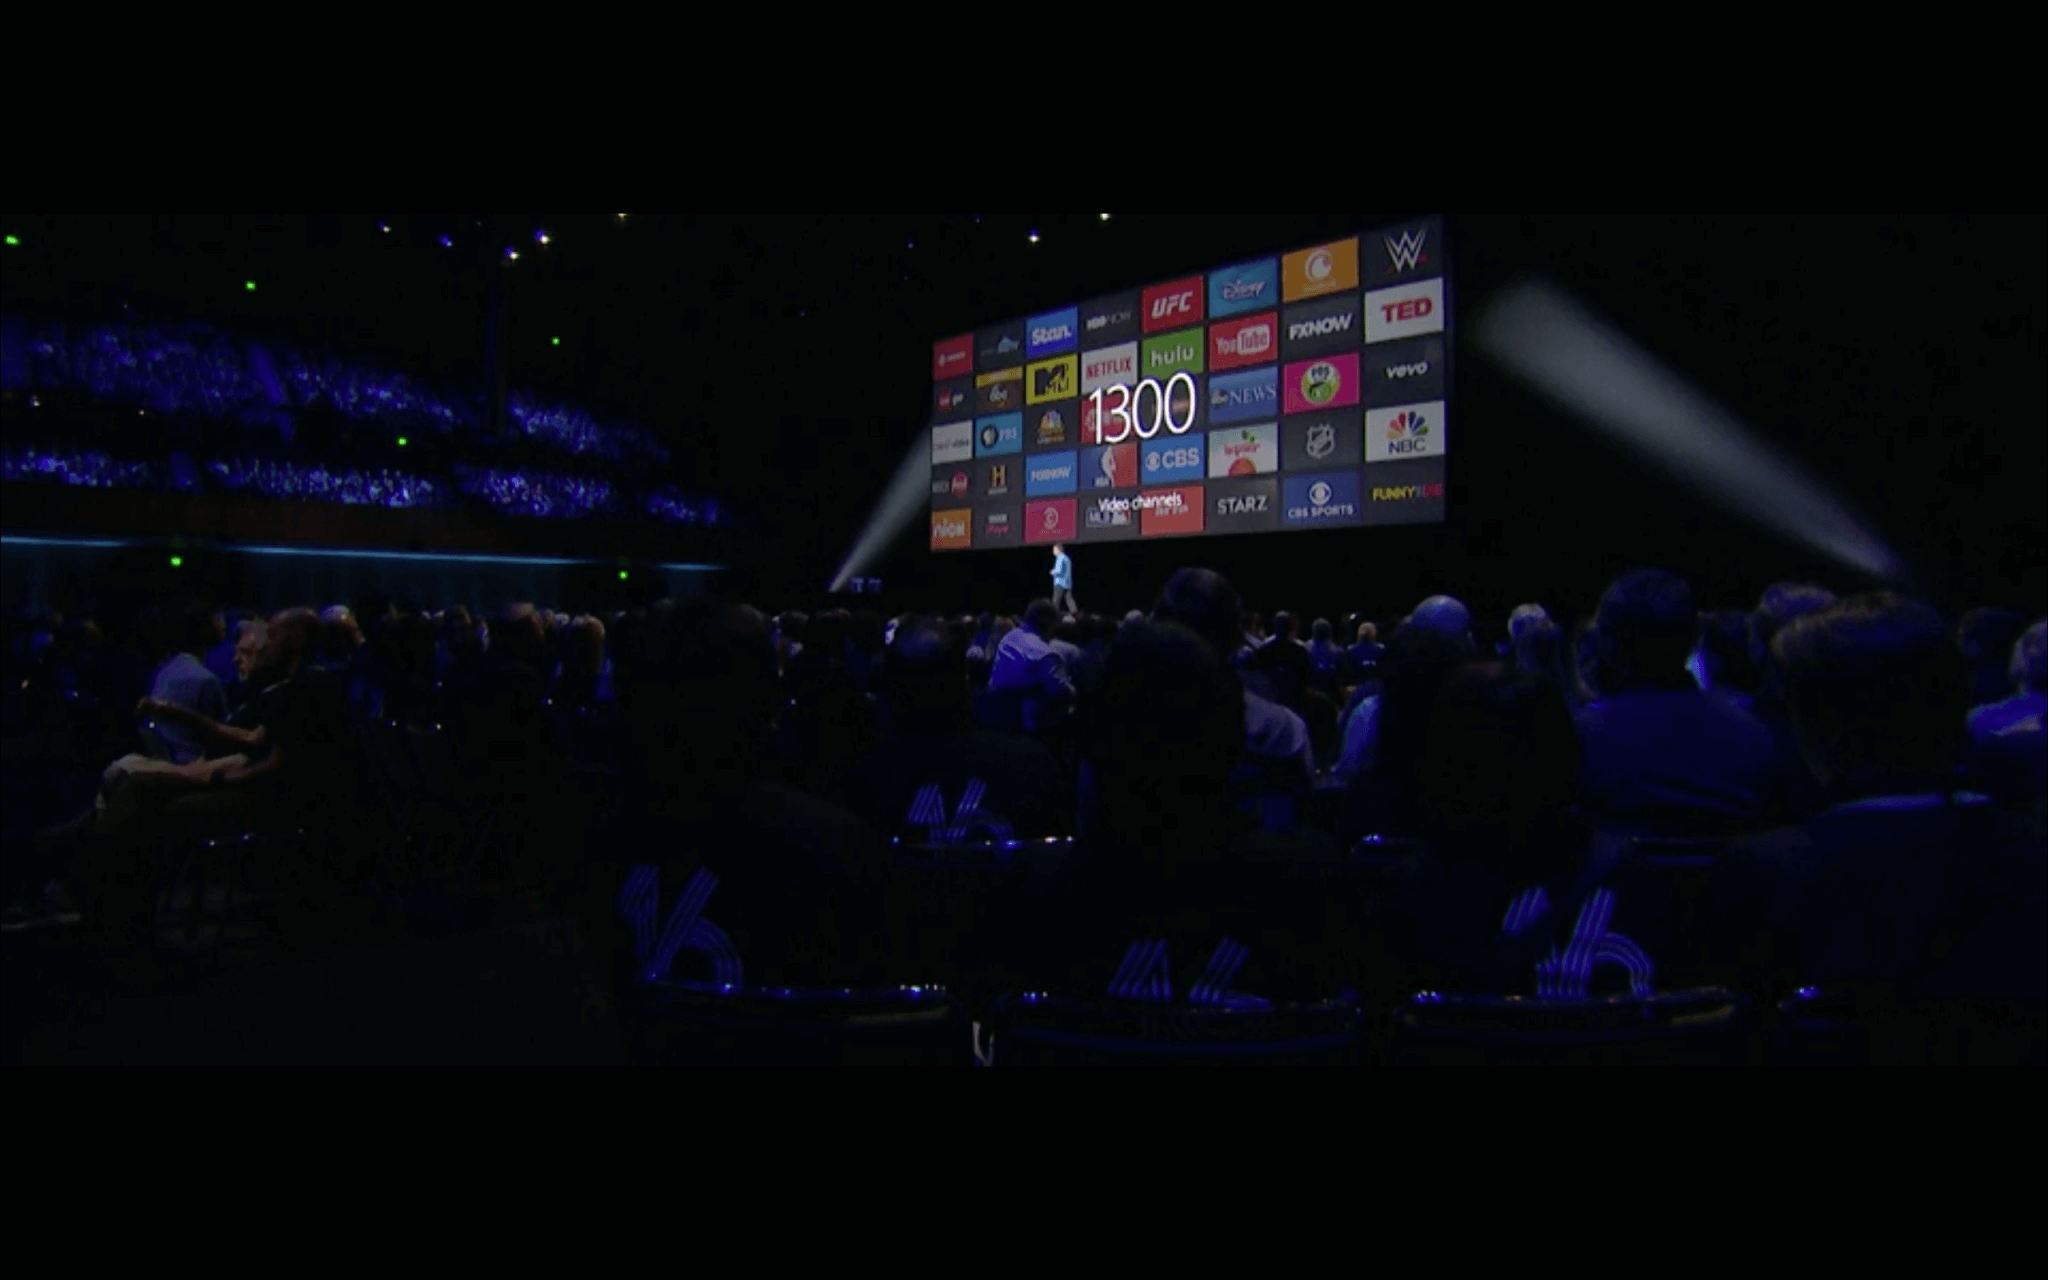 WWDC: Derzeit gibt es 1300 Videokanäle für Apple TV (Screenshot von Apples Lifestream)